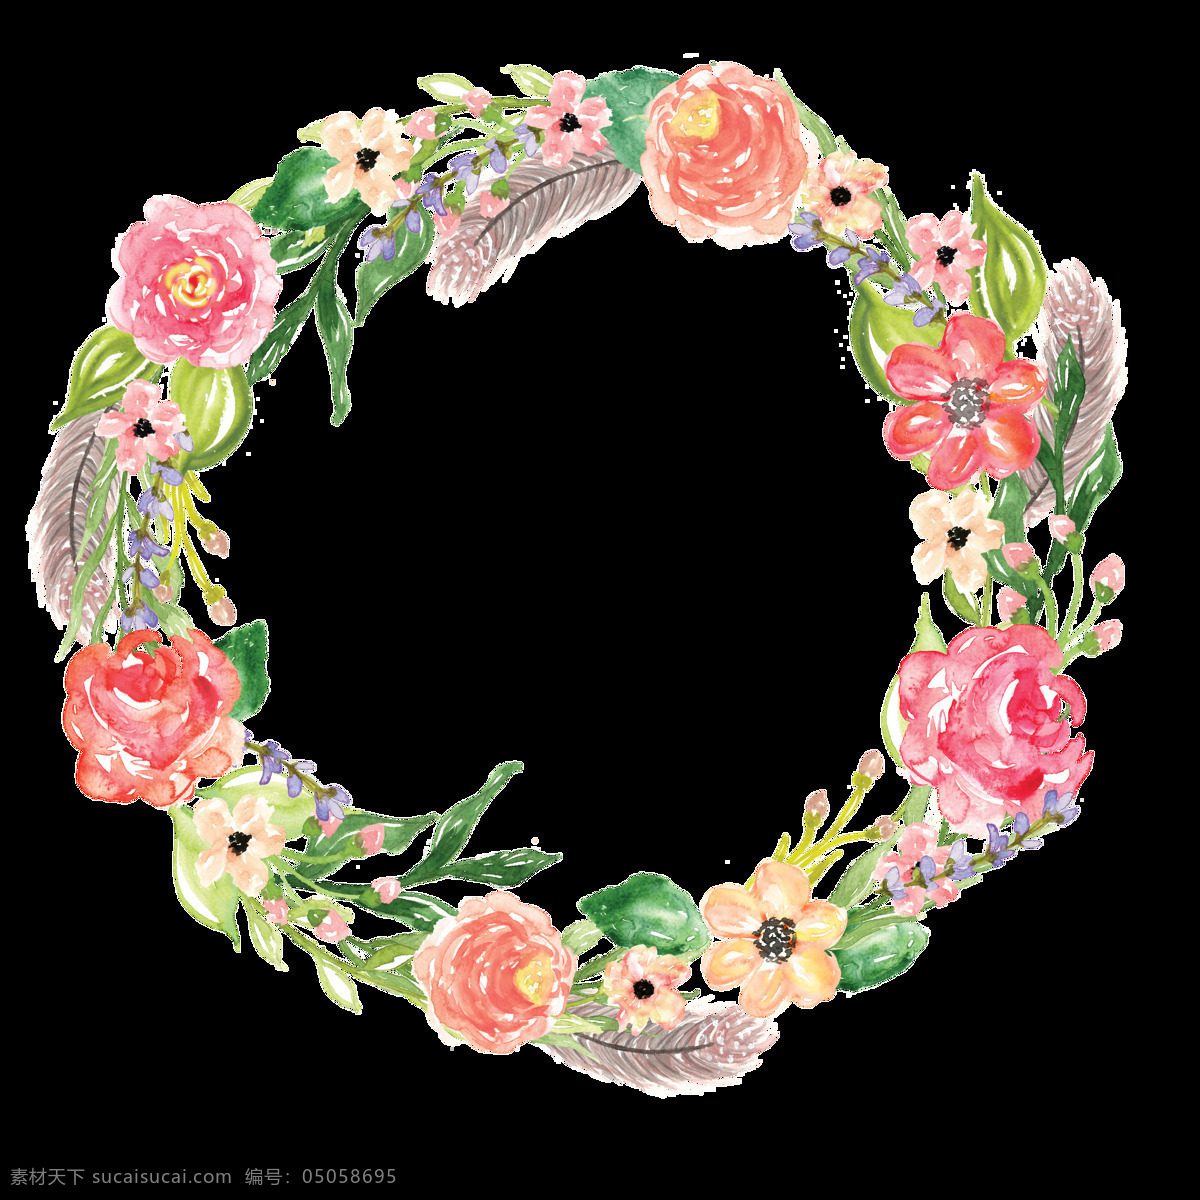 红粉 花圈 卡通 透明 花朵 彩色 透明素材 免扣素材 装饰图案